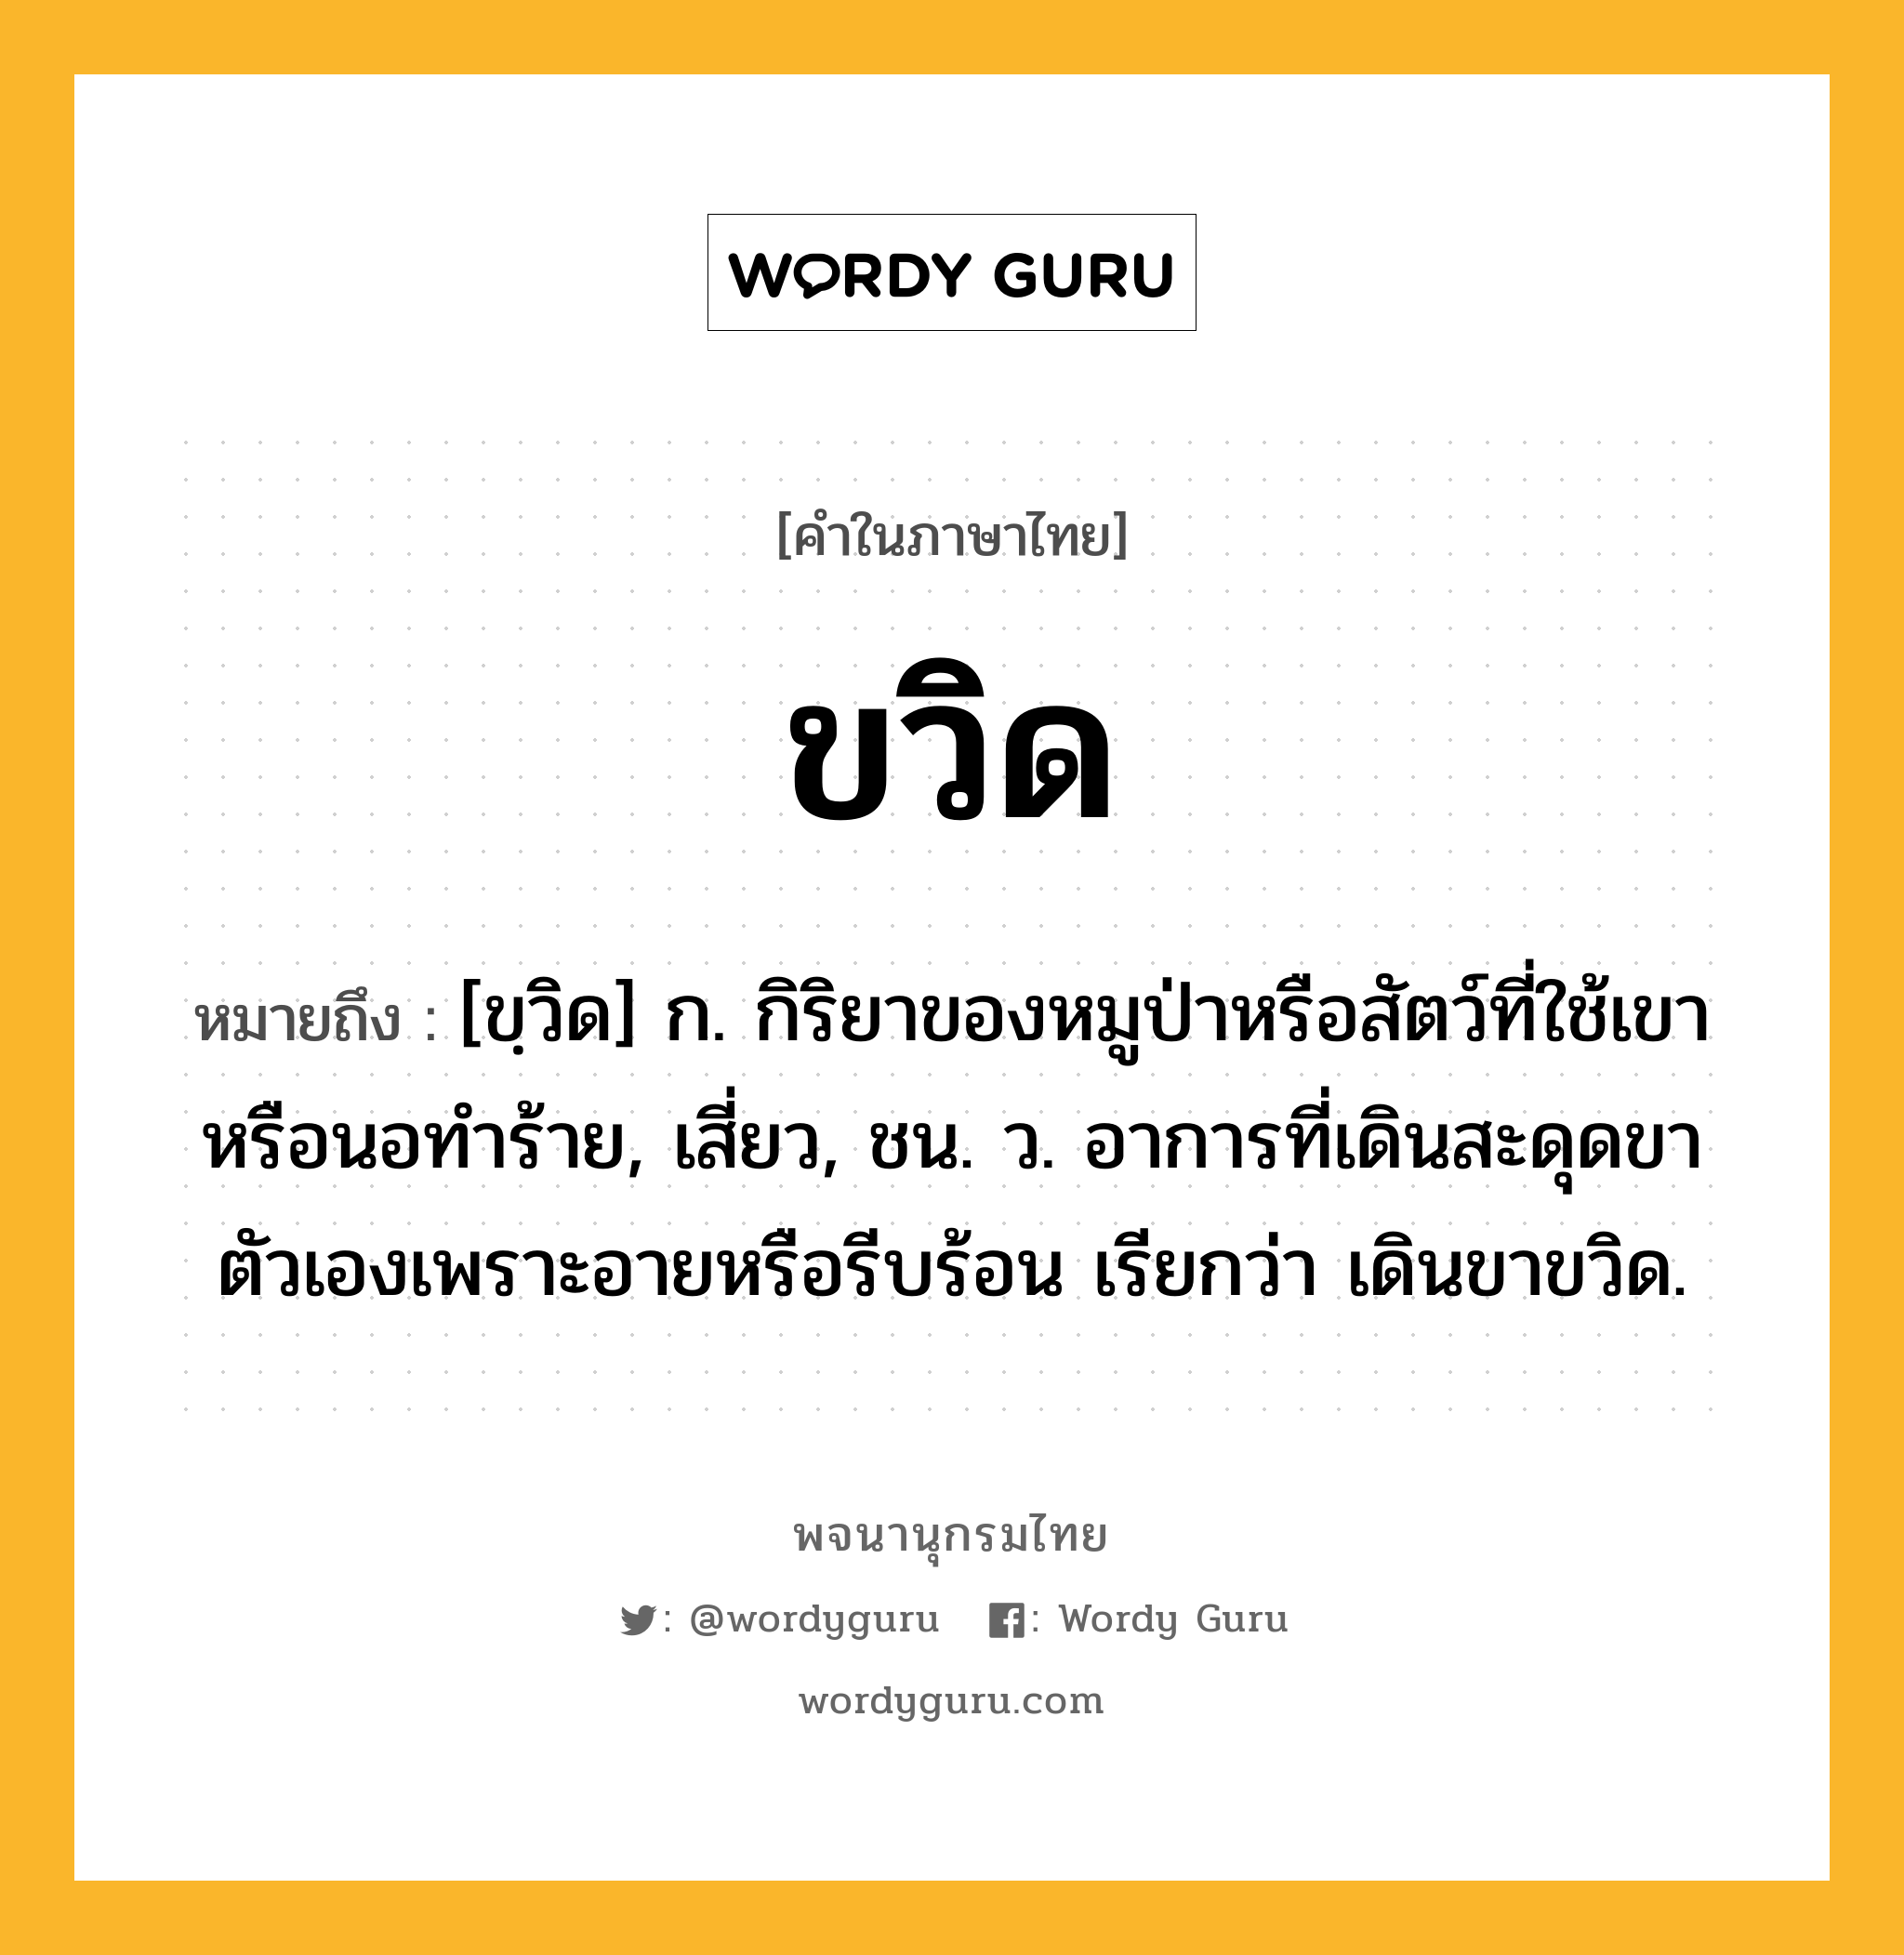 ขวิด หมายถึงอะไร?, คำในภาษาไทย ขวิด หมายถึง [ขฺวิด] ก. กิริยาของหมูป่าหรือสัตว์ที่ใช้เขาหรือนอทําร้าย, เสี่ยว, ชน. ว. อาการที่เดินสะดุดขาตัวเองเพราะอายหรือรีบร้อน เรียกว่า เดินขาขวิด.